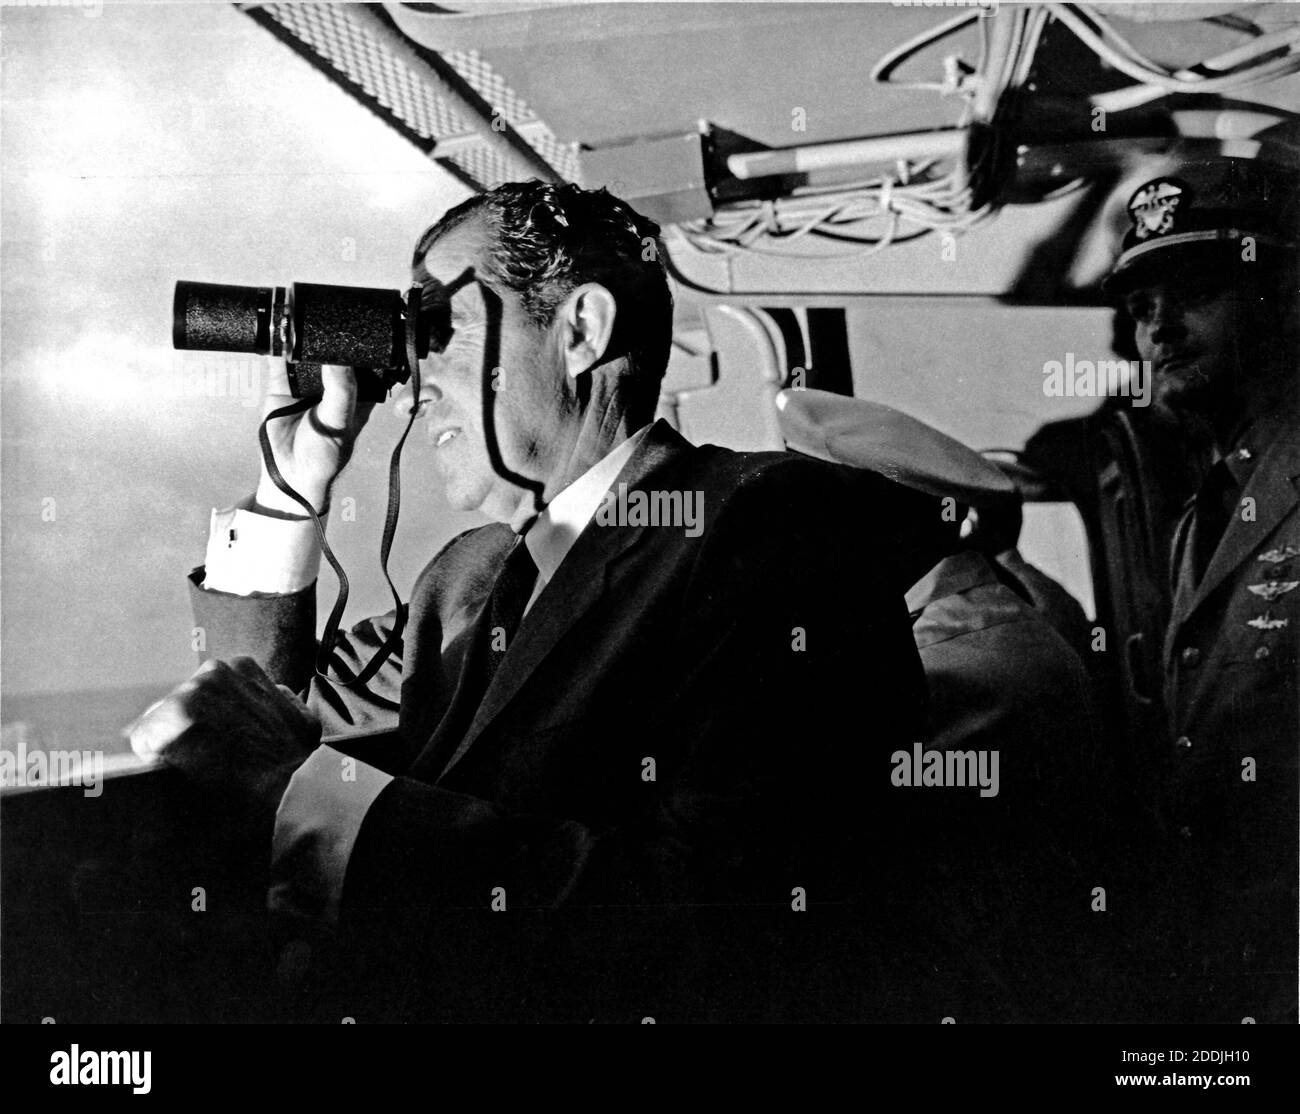 An Bord der USS Hornet - (AKTE) -- US-Präsident Richad M. Nixon folgt Apollo 11 Bergeaktivitäten mit Ferngläsern an Bord der USS Hornet, 13 Meilen (20.9215 km) vom Spritzwasserpunkt der Raumsonde entfernt. Der Präsident führte die Nation in Begrüßung Astronauten Neil A. Armstrong, Michael Collins, und Edwin E. Aldrin, Jr., am erfolgreichen Abschluss ihrer historischen Mondlandemission am 24. Juli 1969. Ihr Raumschiff spritzte 900 Meilen (1448.41 km) südwestlich von Hawaii um 12:50 Uhr EDT 24. Juli 1969 Acht Tage nachdem die Raumpiloten von einem Saturn V Space vehi gestartet wurden Stockfoto